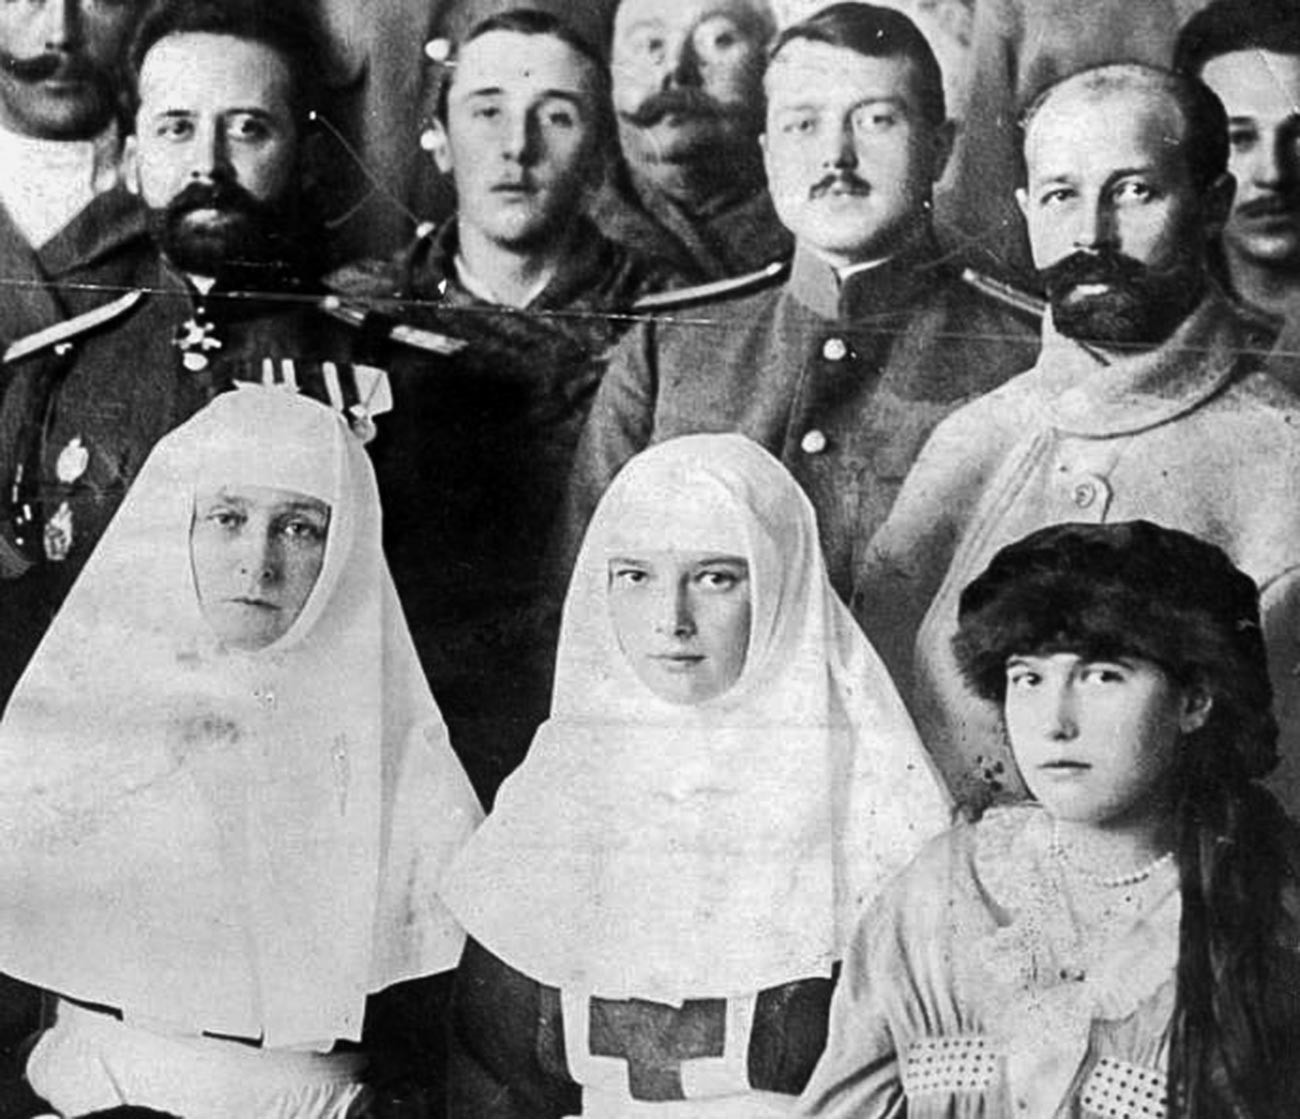 Pemarisuri Aleksandra beserta kedua putrinya, Tatiana dan Anastasia, selama Perang Dunia I.